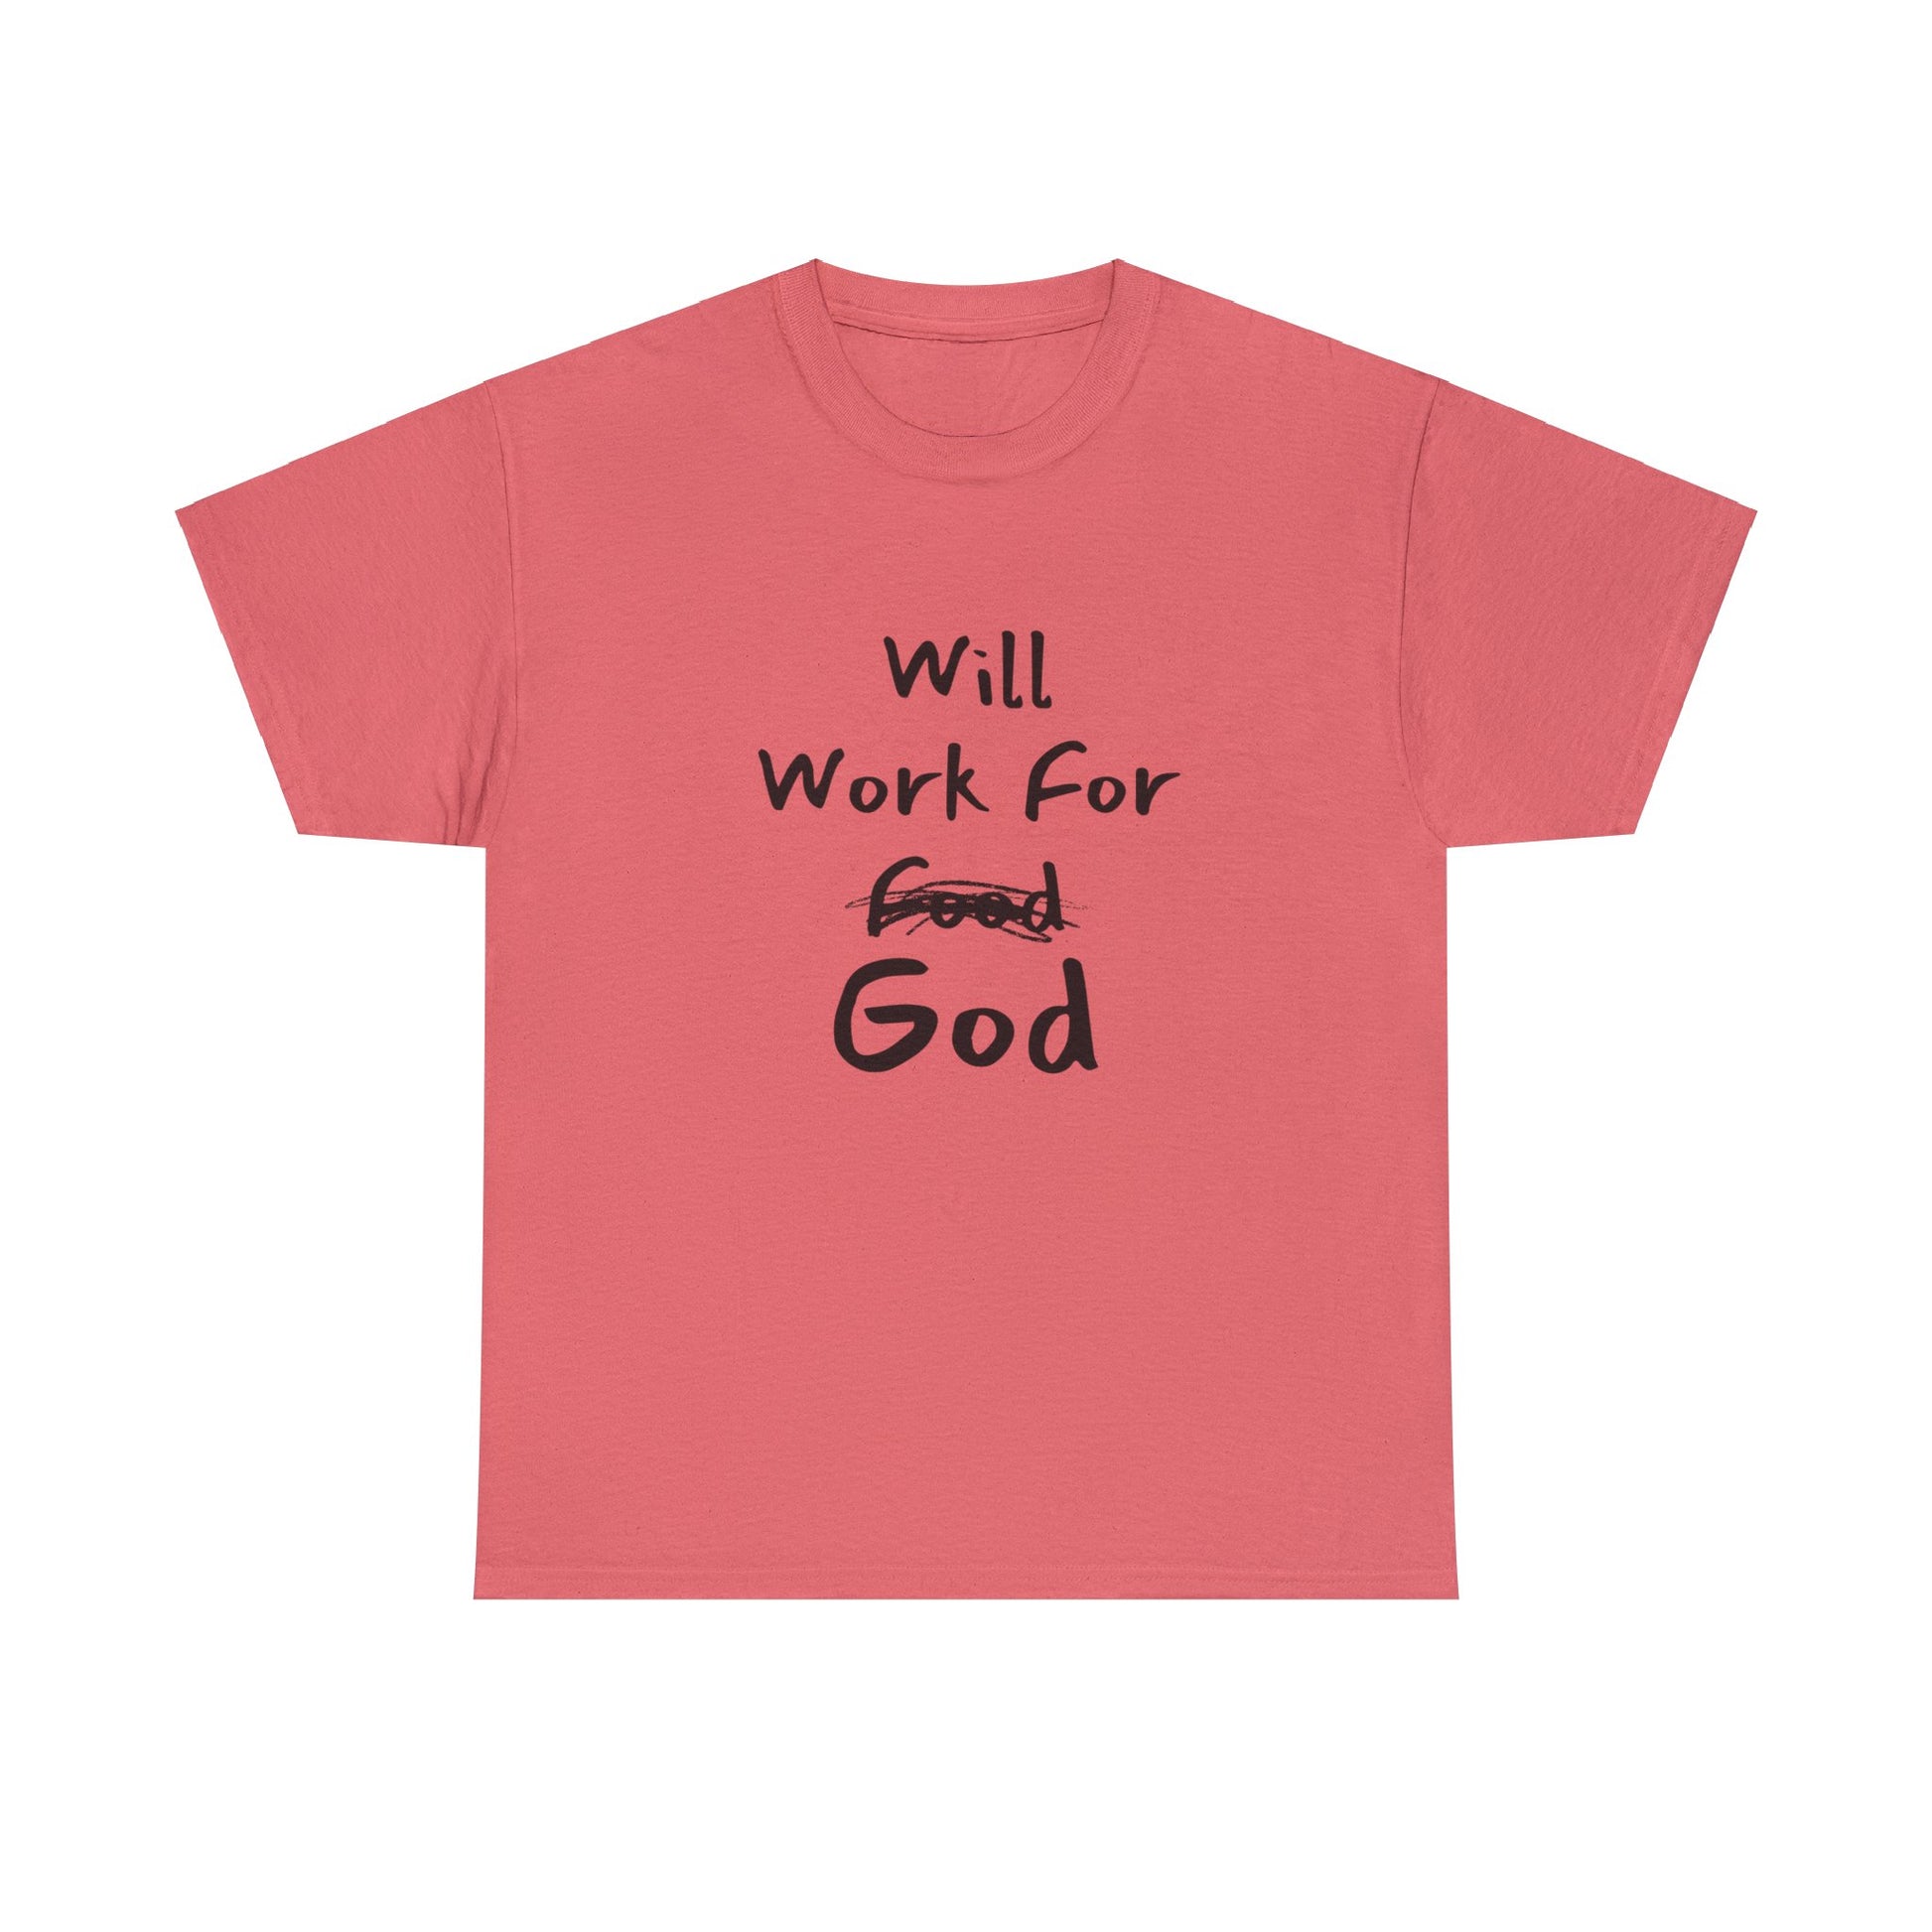 "Christian T-shirt Will Work For God design."